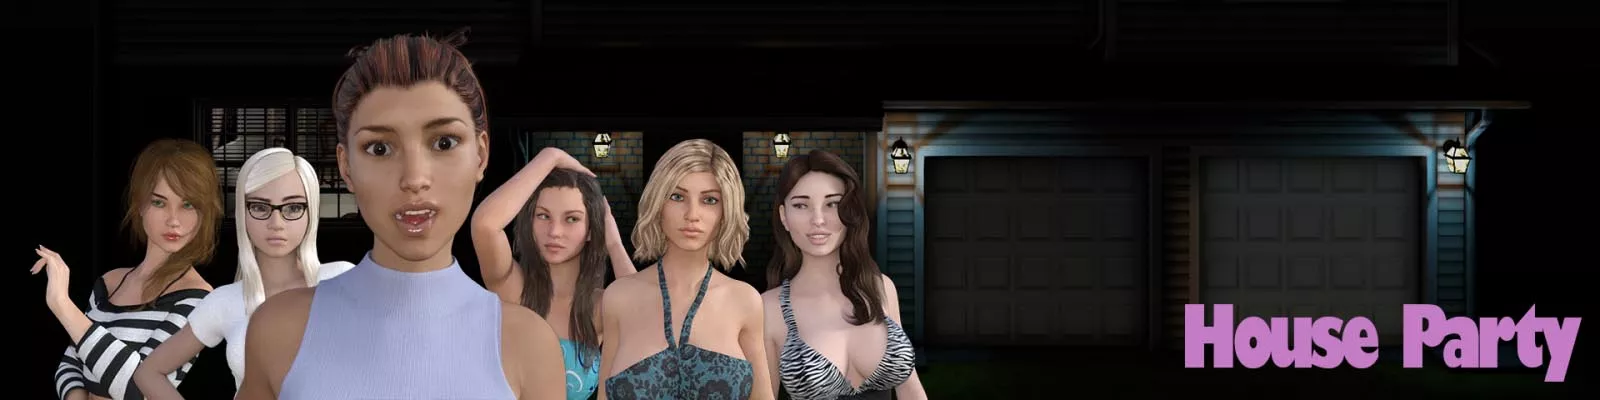 हाउस पार्टी 3d सेक्स गेम